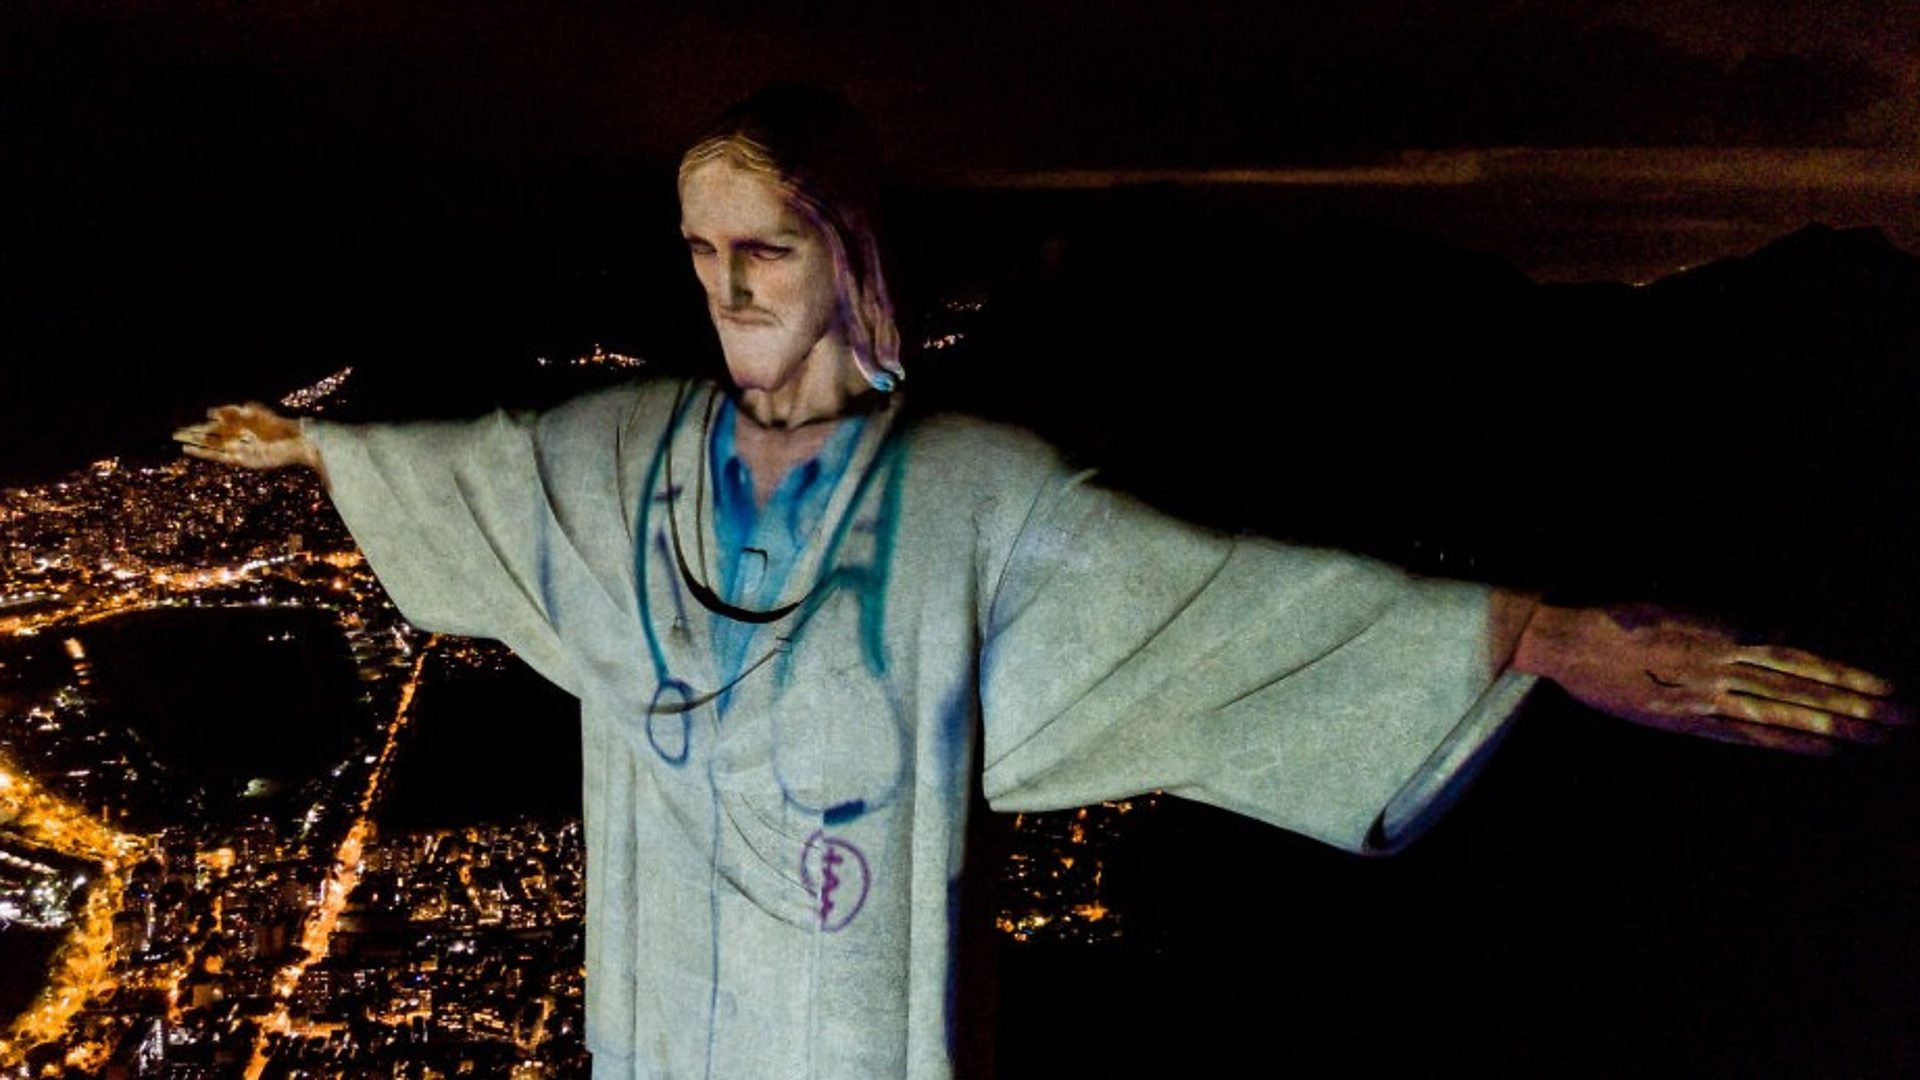 Coronavirus Christ The Redeemer Statue In Rio Illuminated As Doctor c News